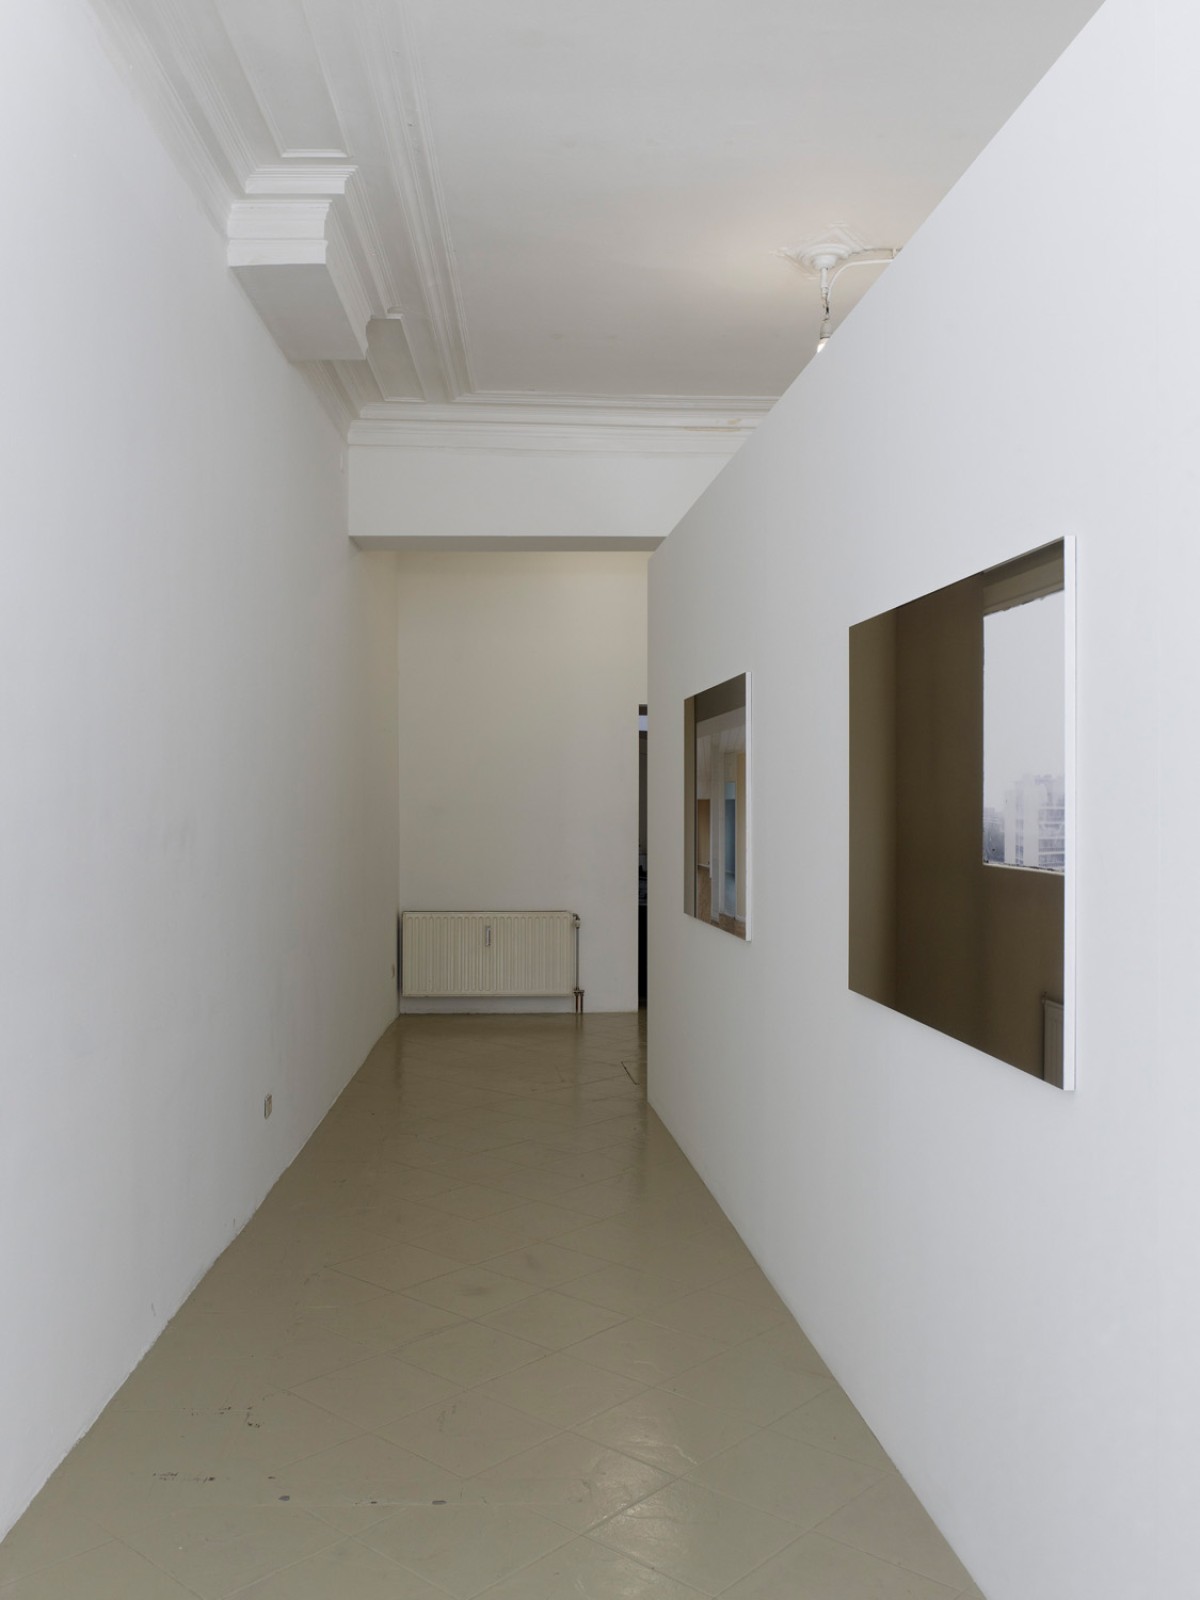 Apartment, Wall (2011) - Exhibition view at Etablissement d’en face, Brussels